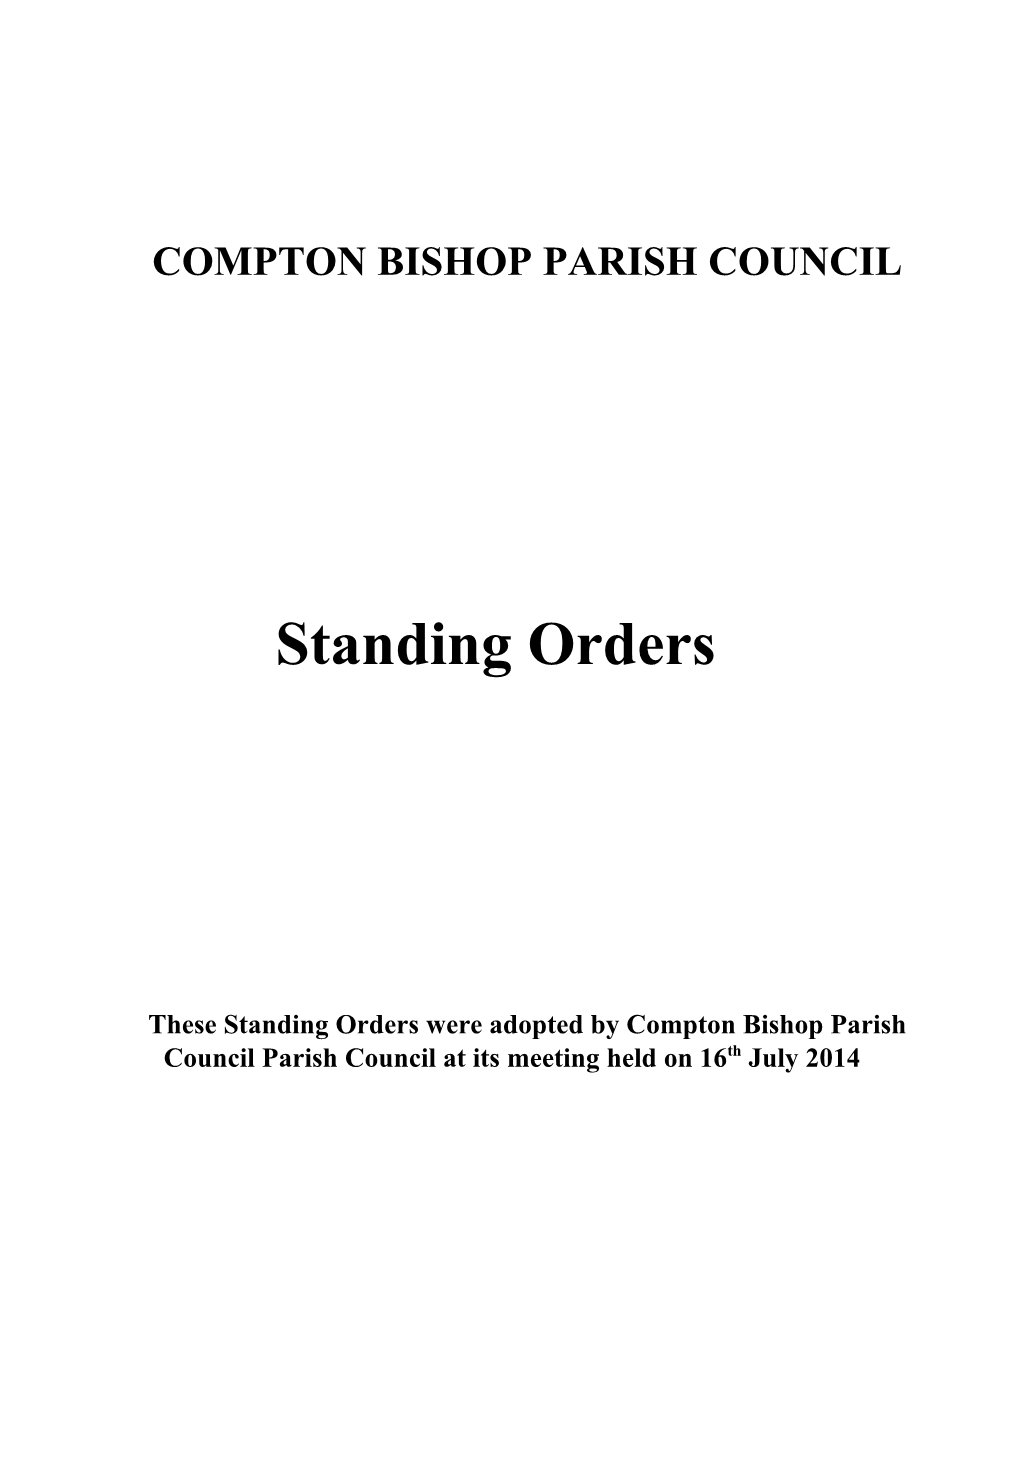 Compton Bishop Parish Council